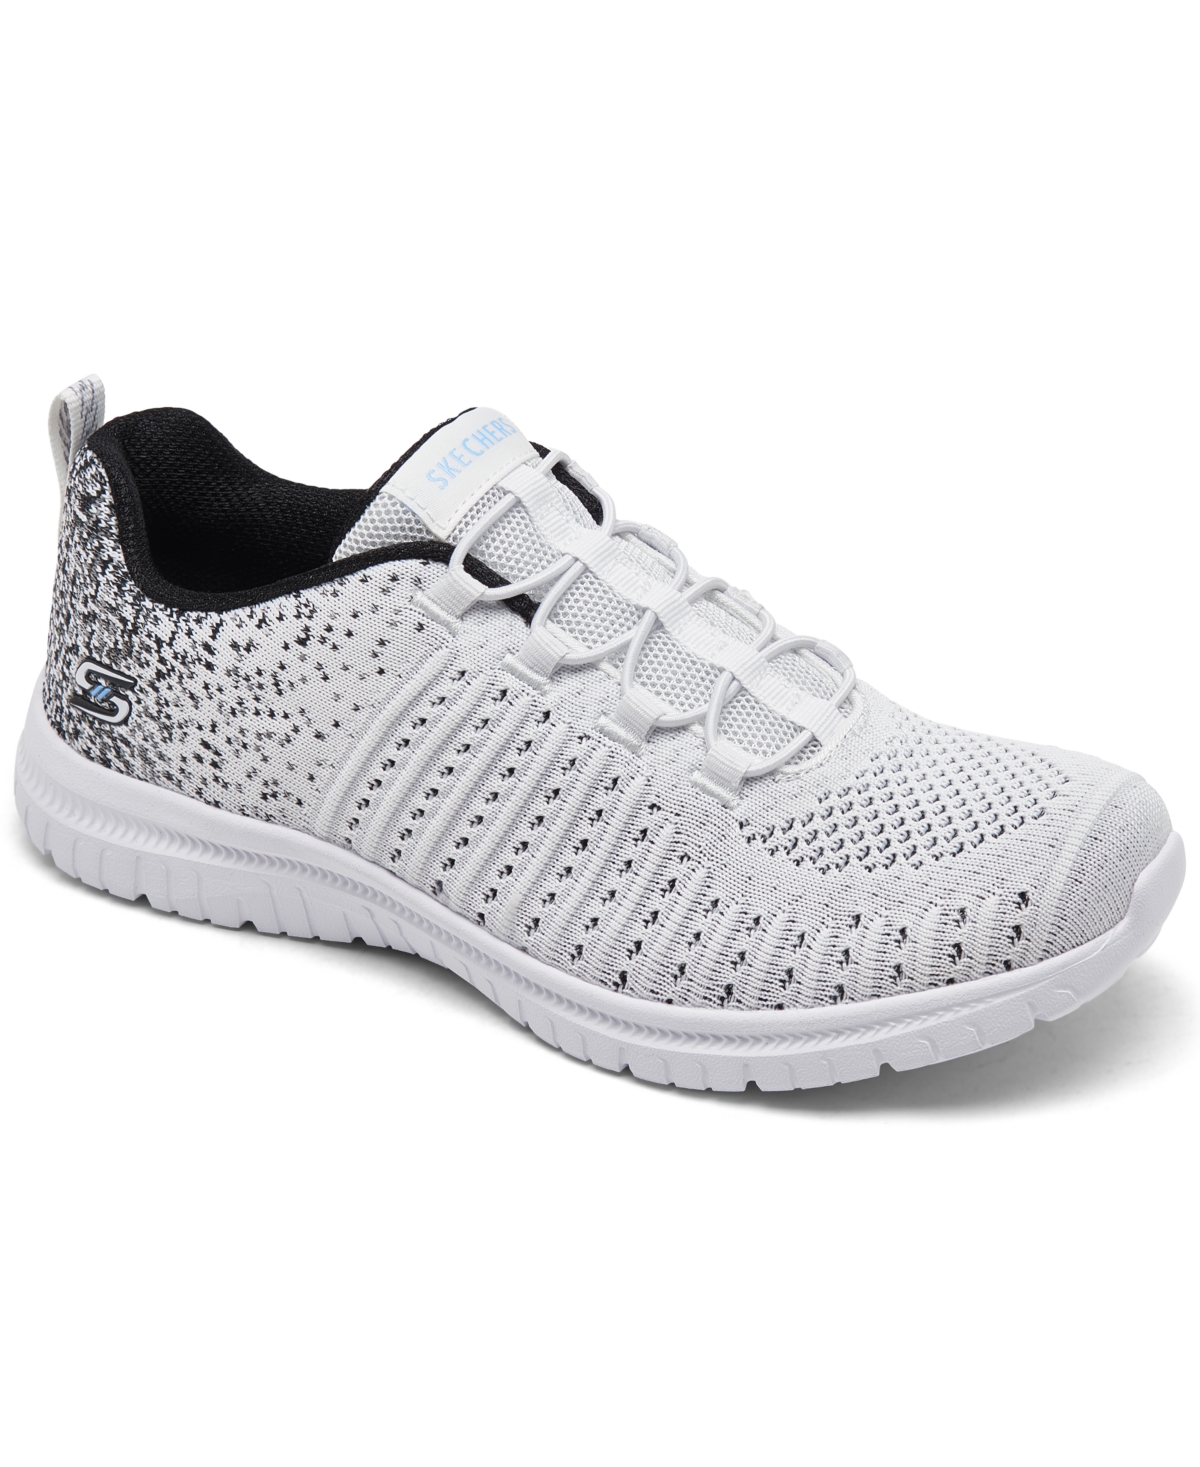 Women's Virtue Slip-On Walking Sneakers from Finish Line - Black, White